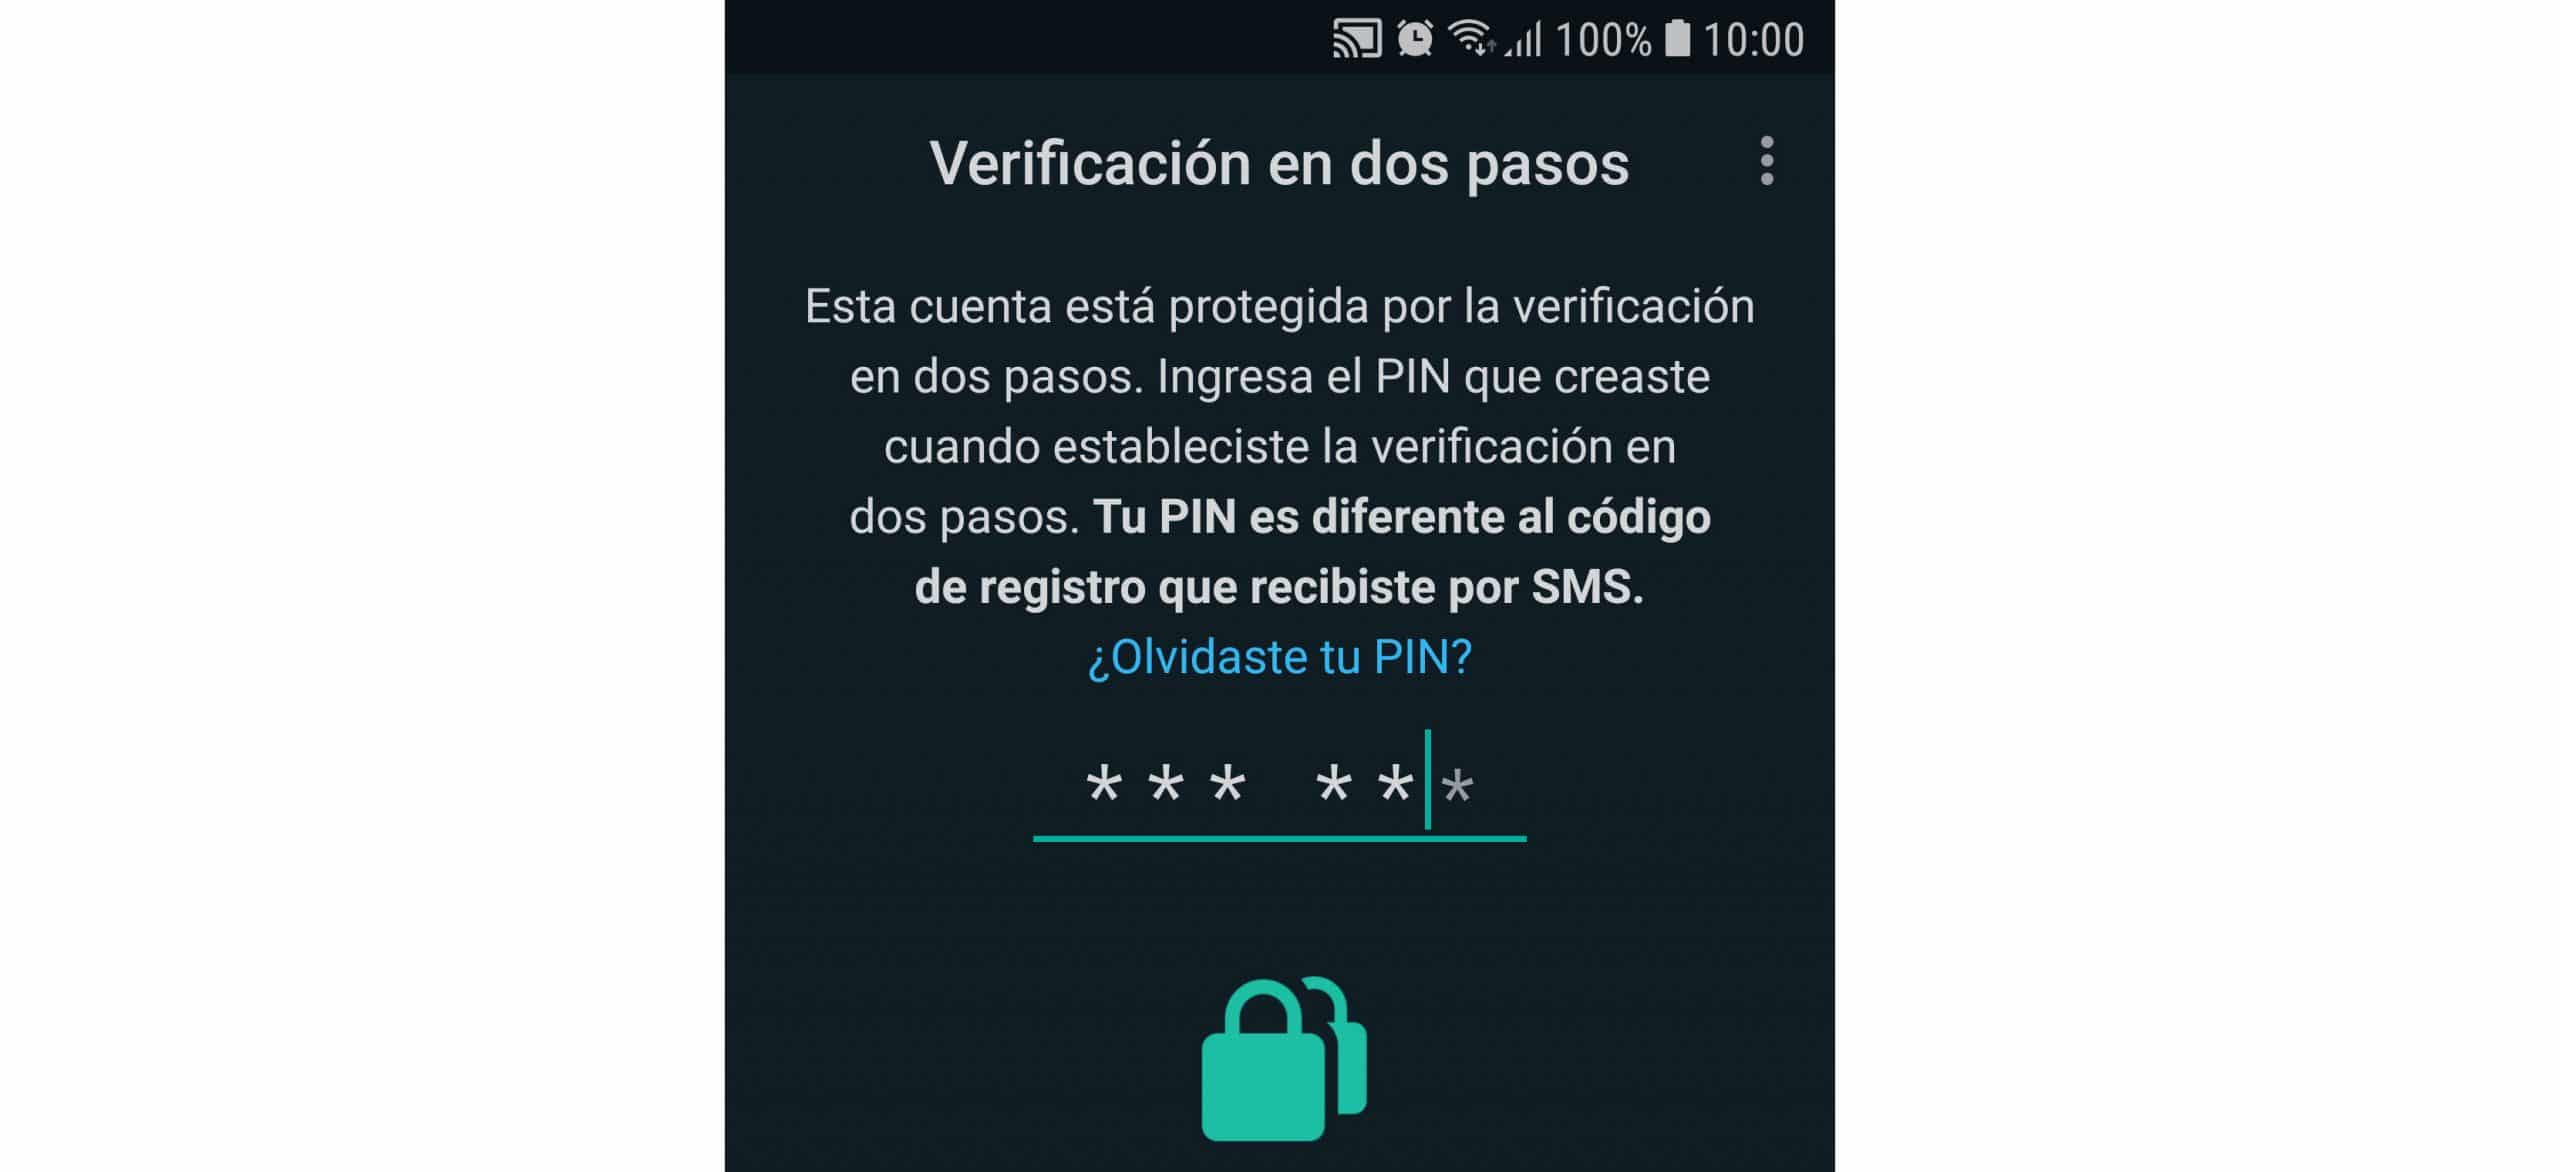 Esta seguridad de WhatsApp evita que abran tu cuenta en otro dispositivo